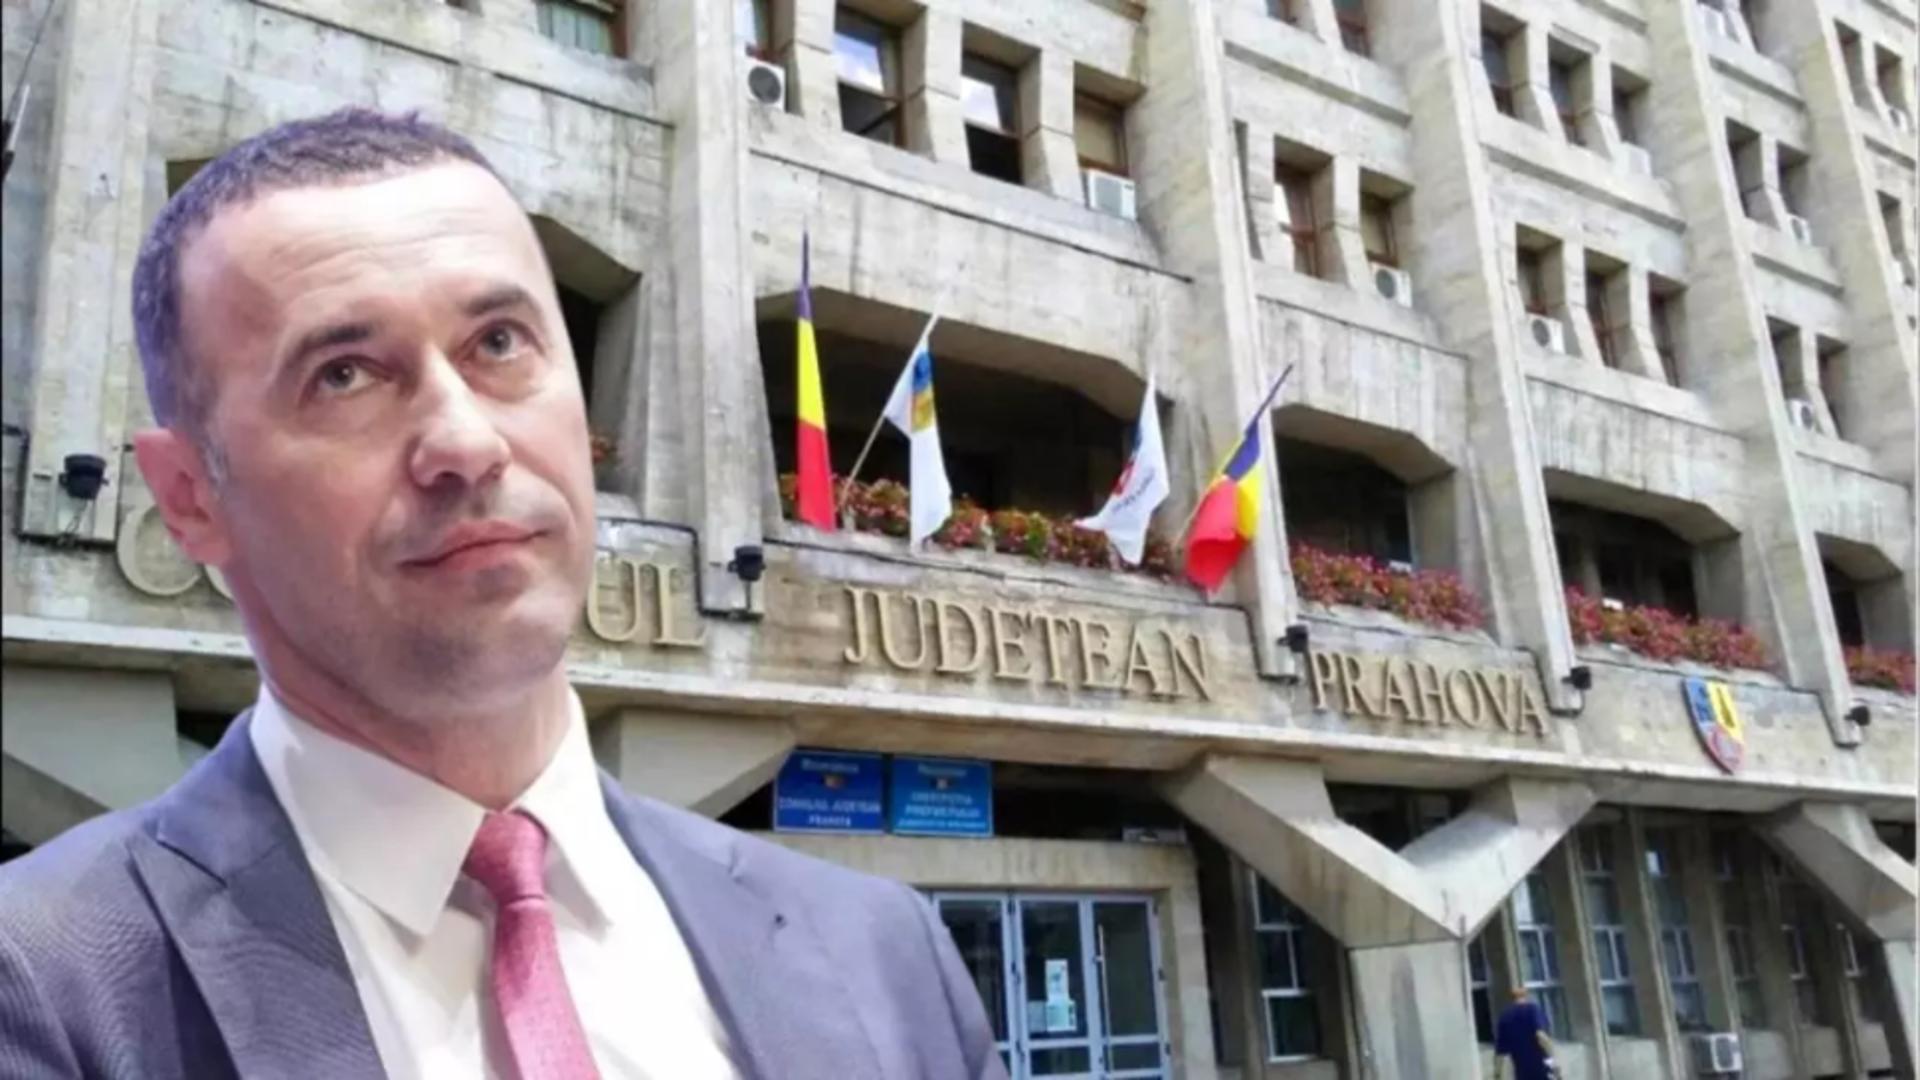 Candidatura lui Iulian Dumitrescu la șefia CJ Prahova a pus pe jar liberalii. Lucian Bode: Am sesizat Curtea de Arbitraj a PNL